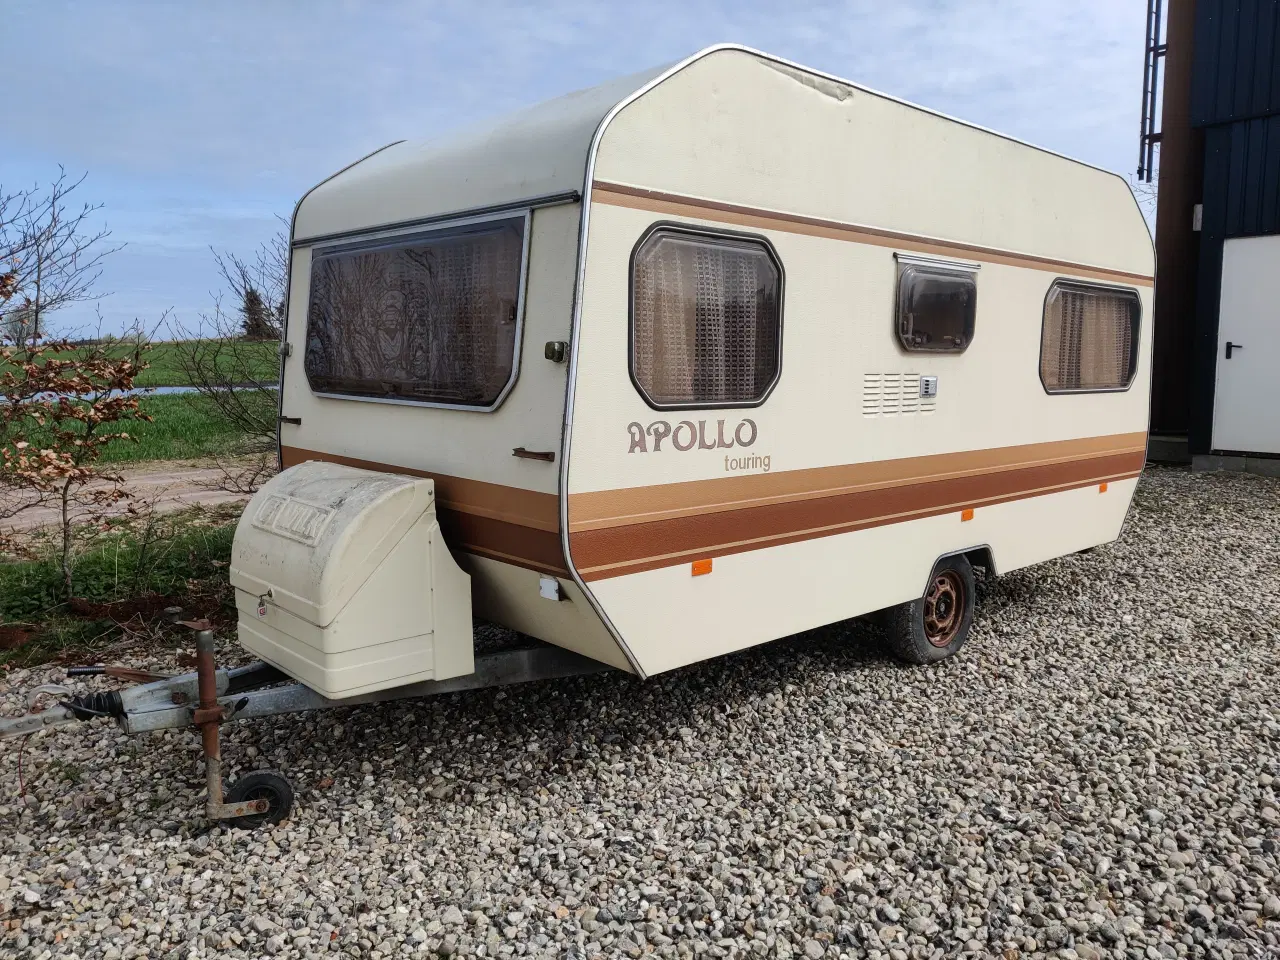 Billede 1 - Campingvogn Apollo touring